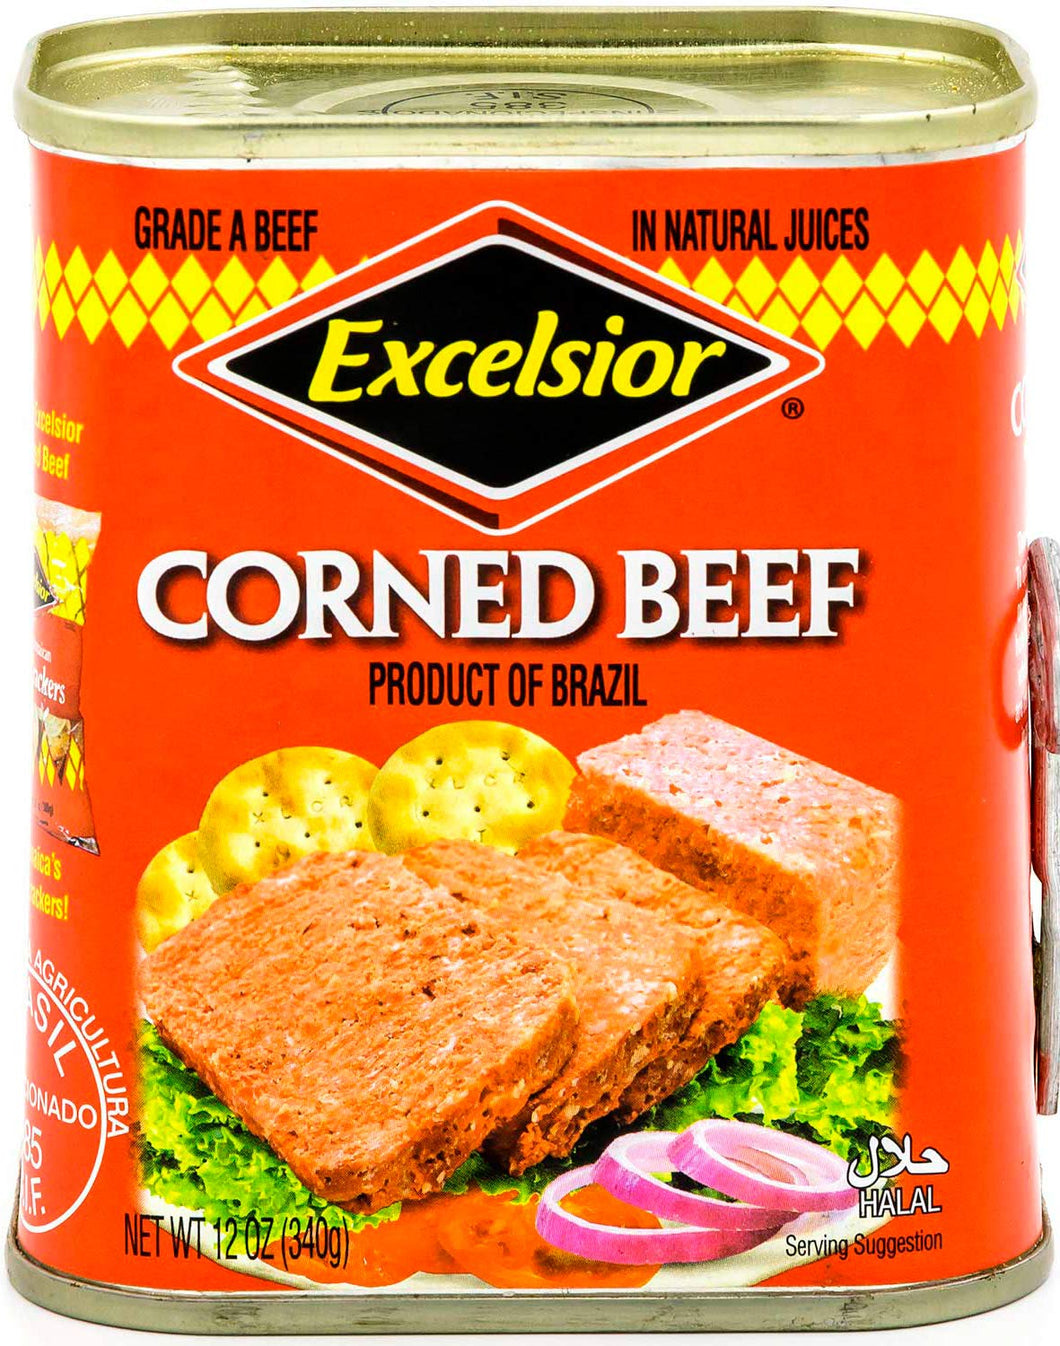 Excelsior Corned Beef 12oz